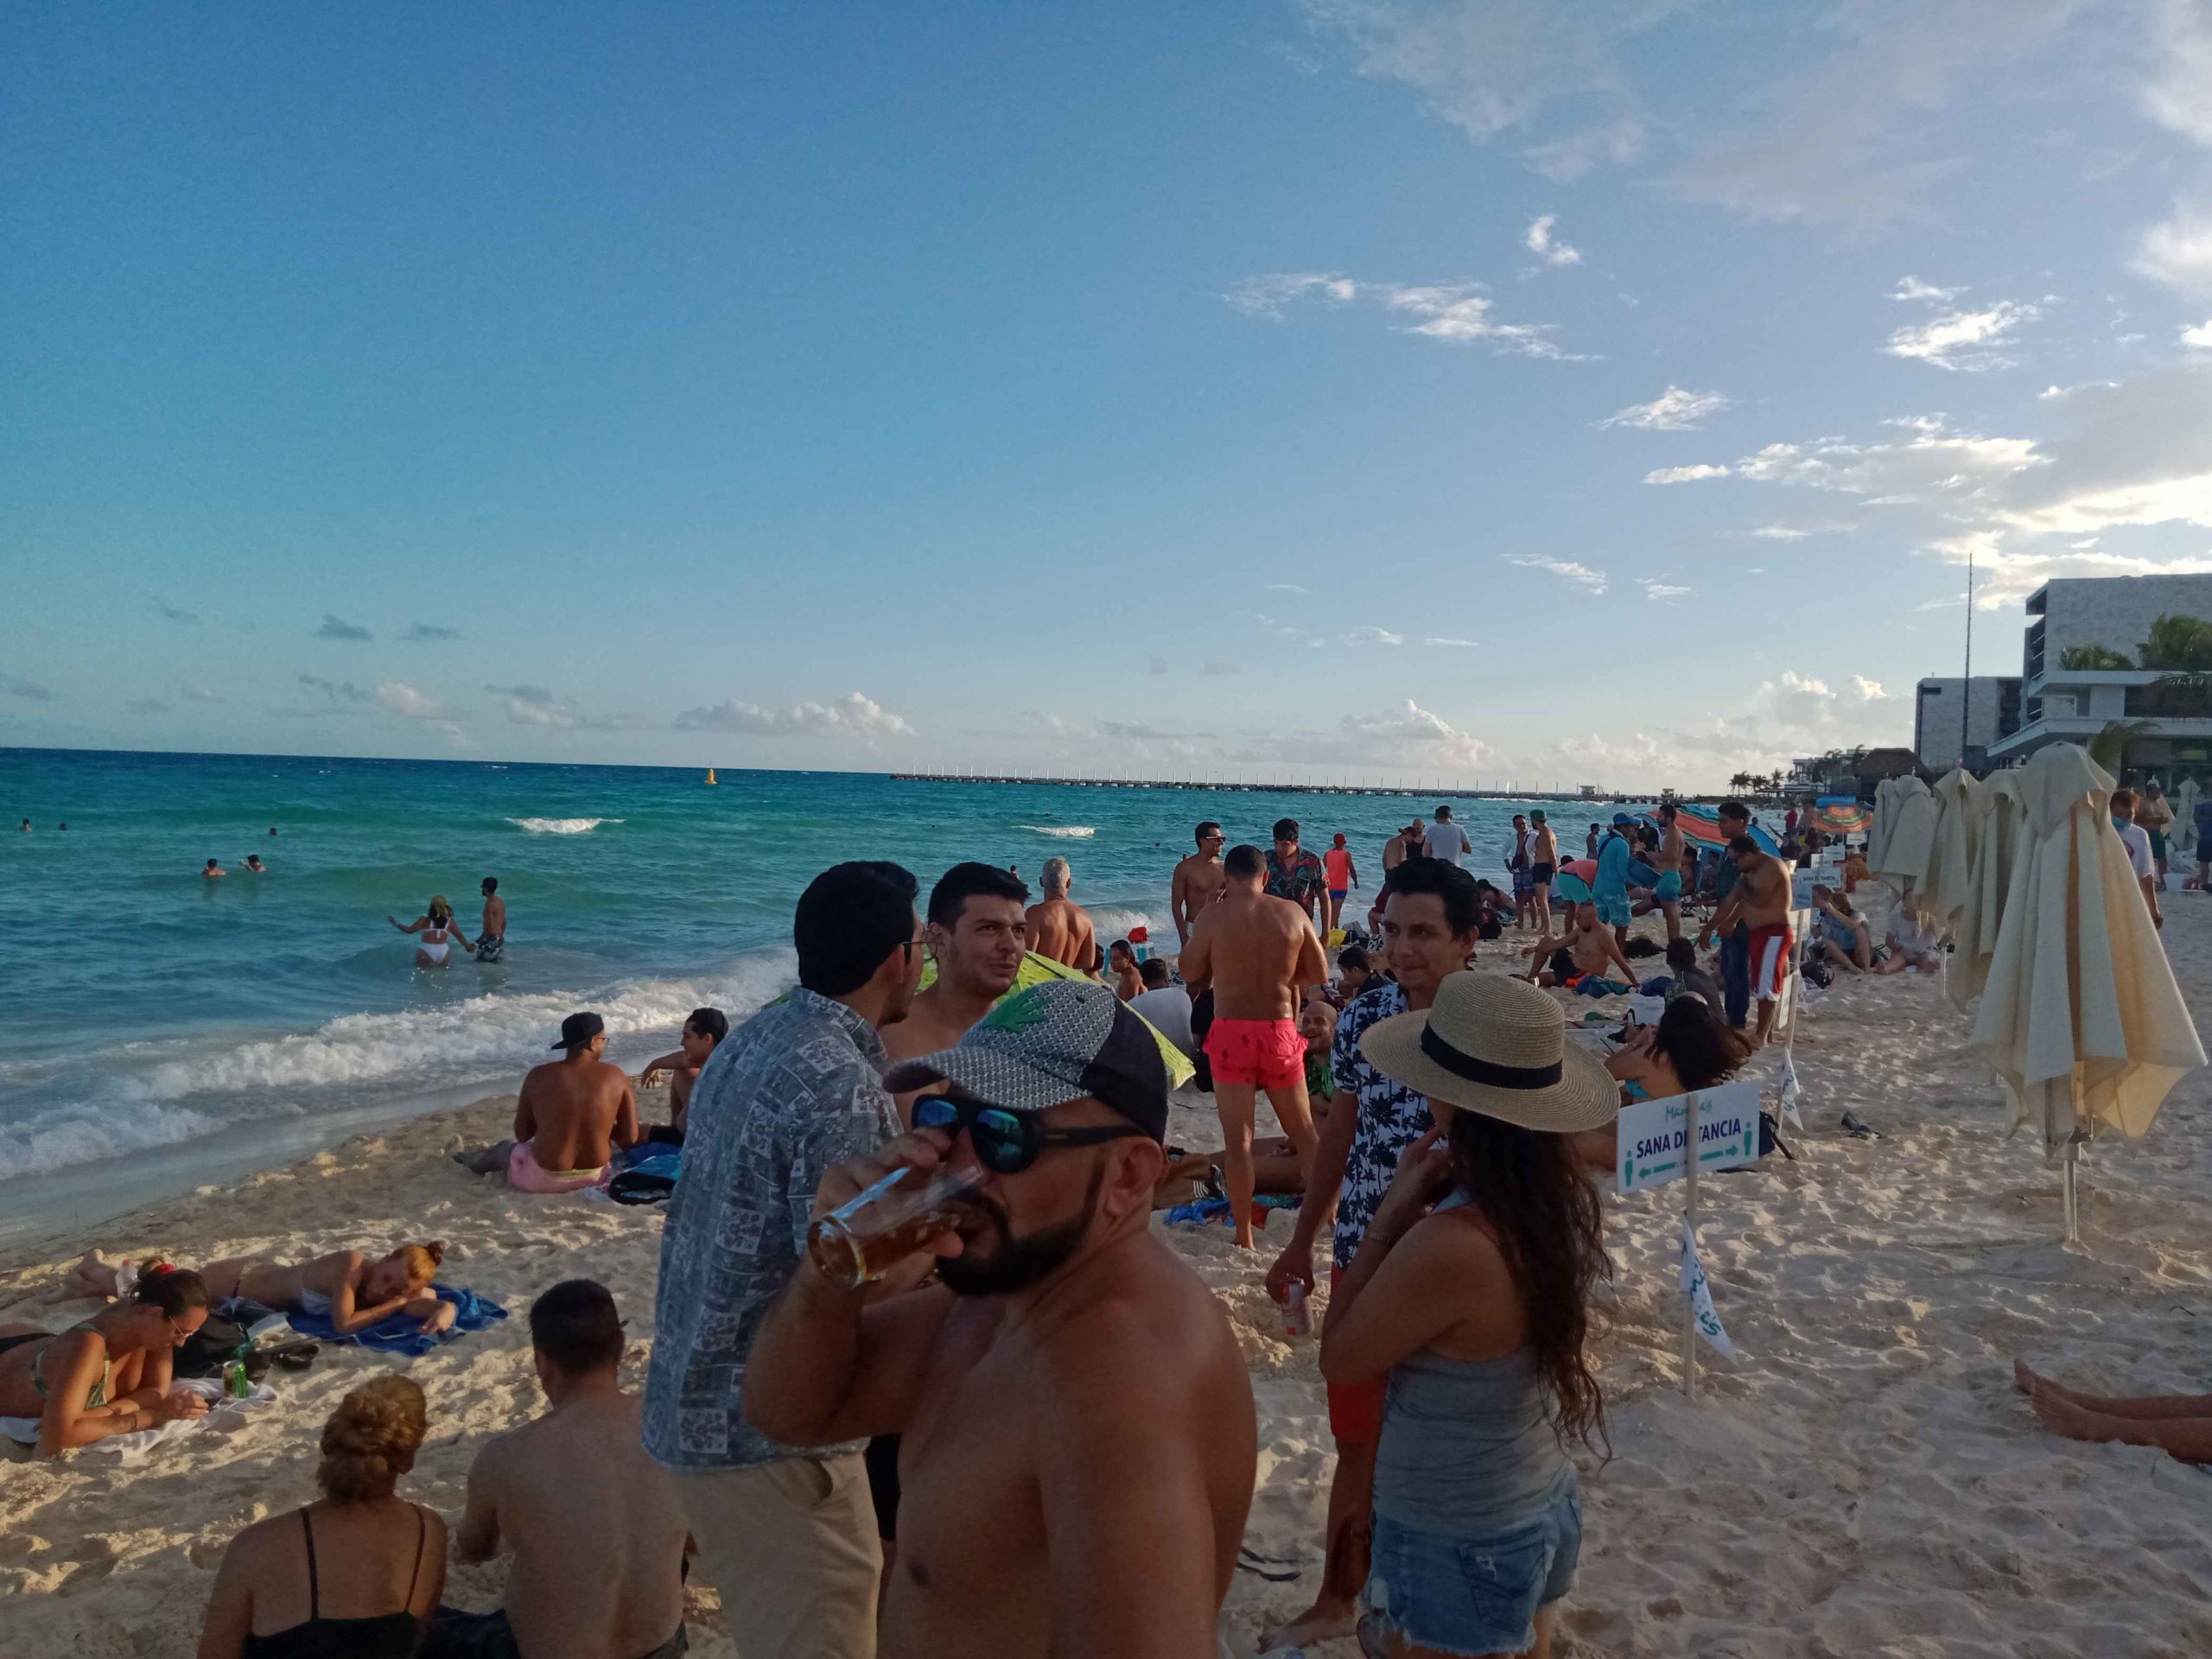 Popular beach "Mamitas" in Playa